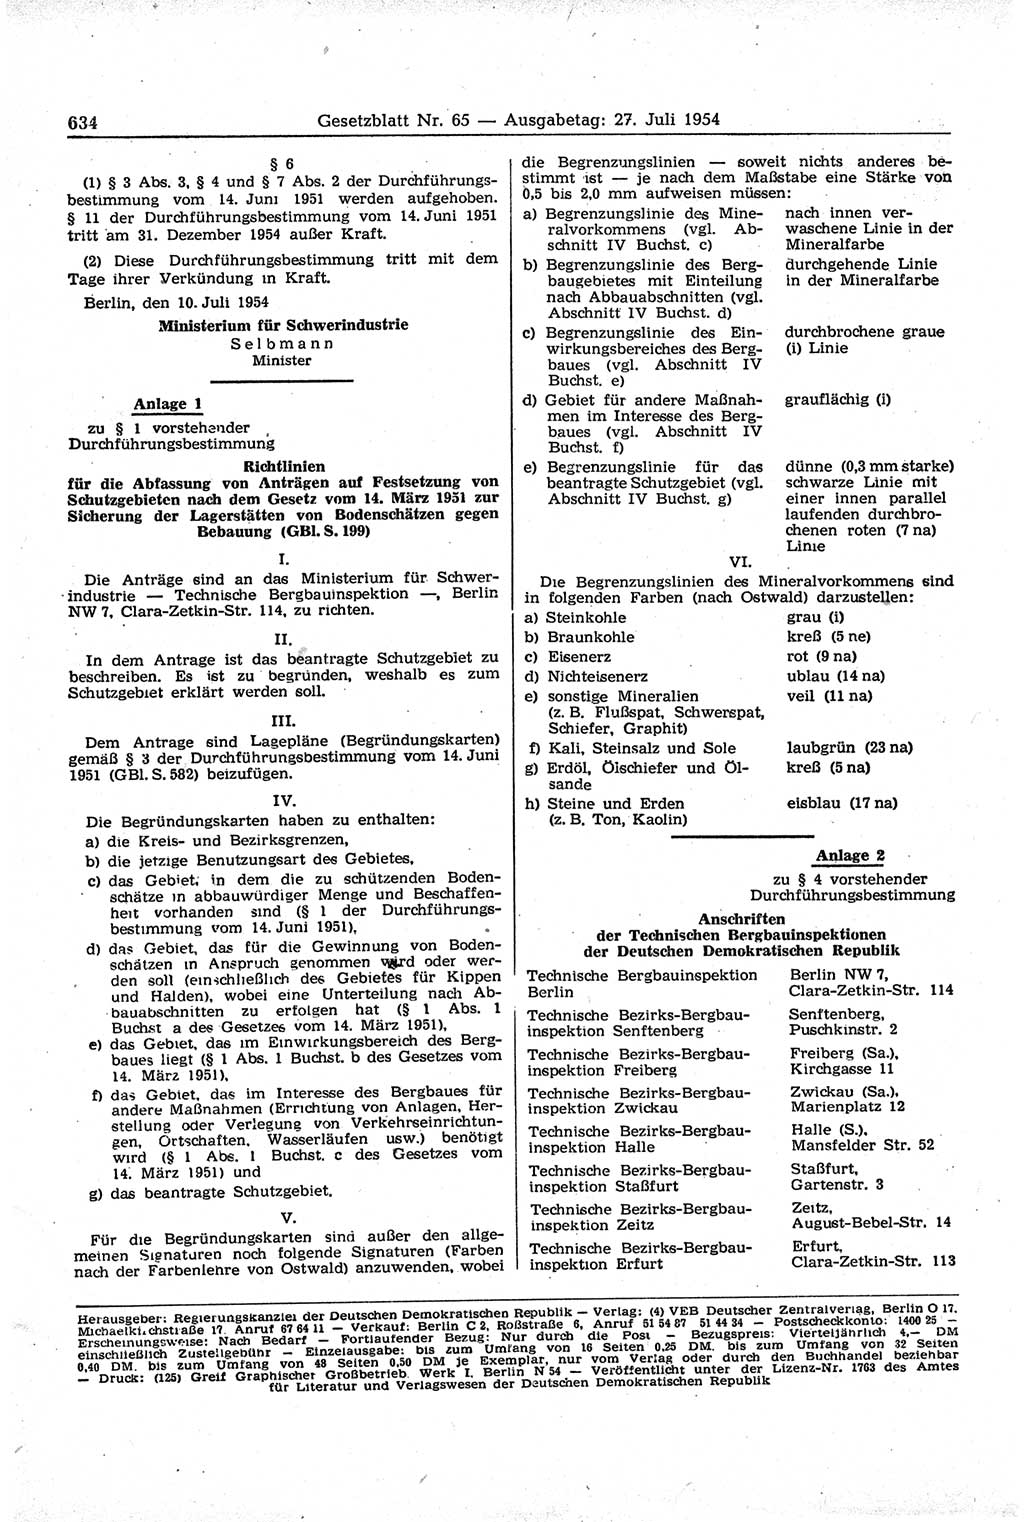 Gesetzblatt (GBl.) der Deutschen Demokratischen Republik (DDR) 1954, Seite 634 (GBl. DDR 1954, S. 634)